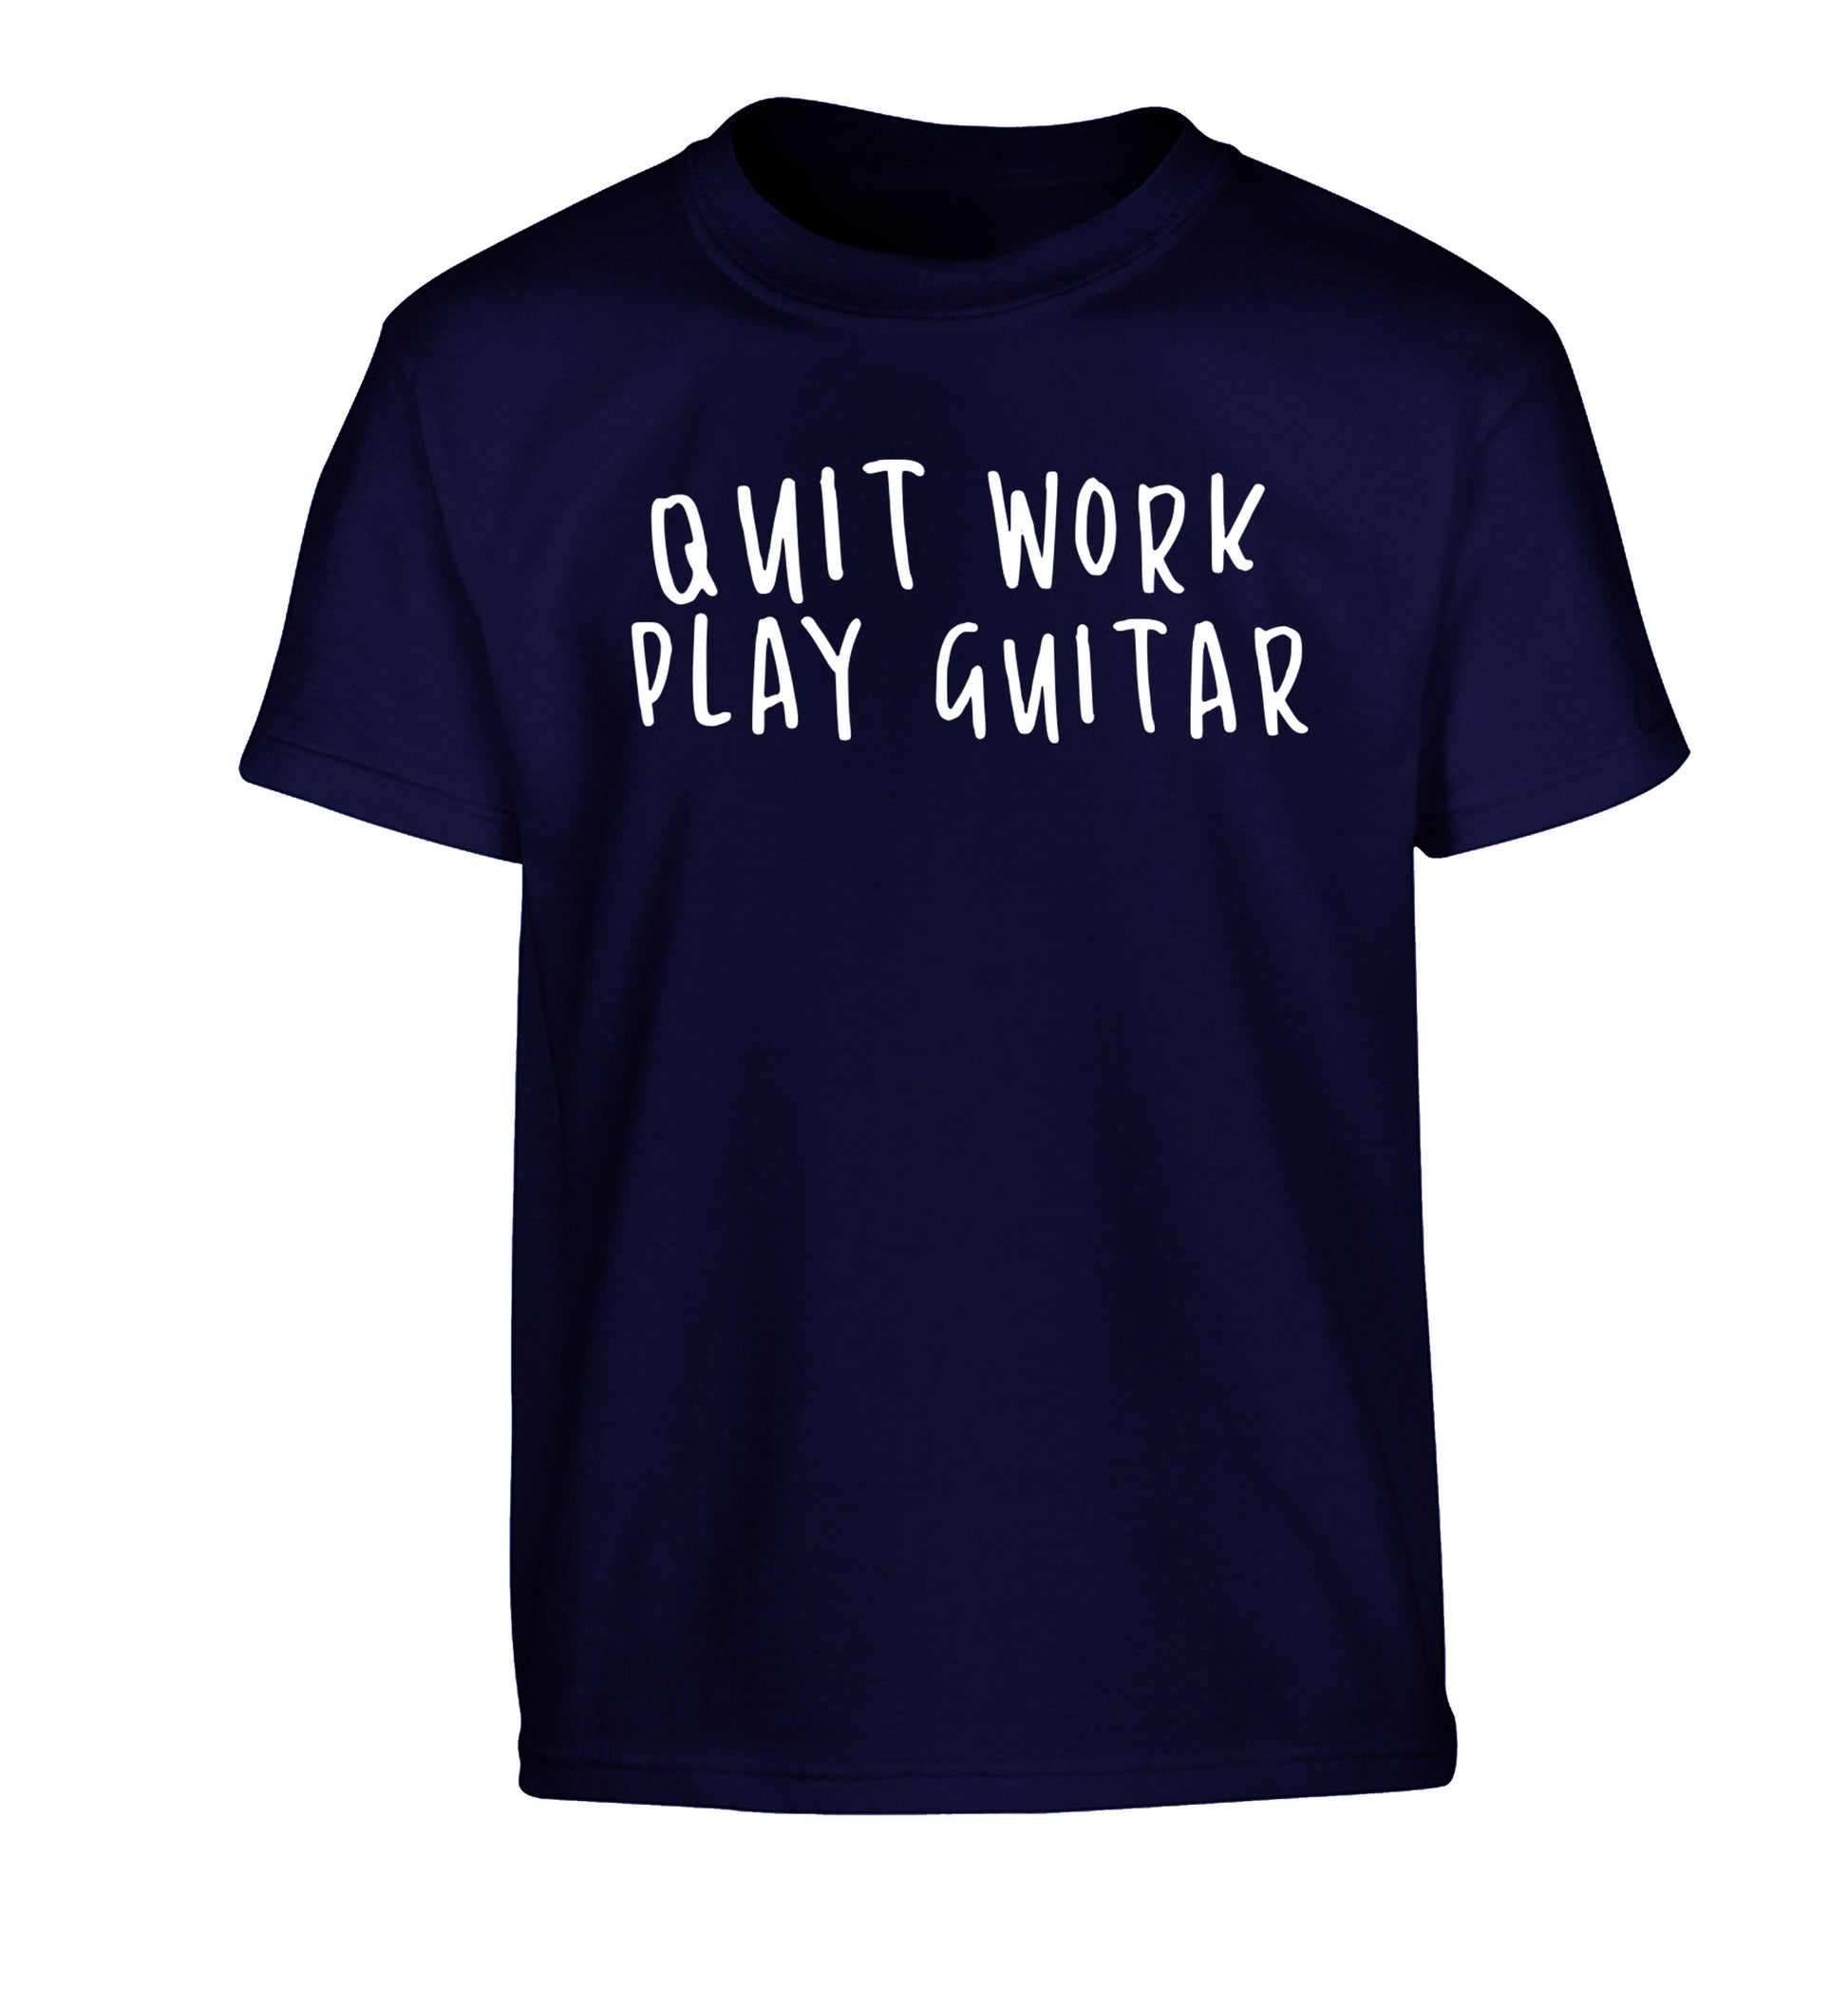 Quit work play guitar Children's navy Tshirt 12-14 Years